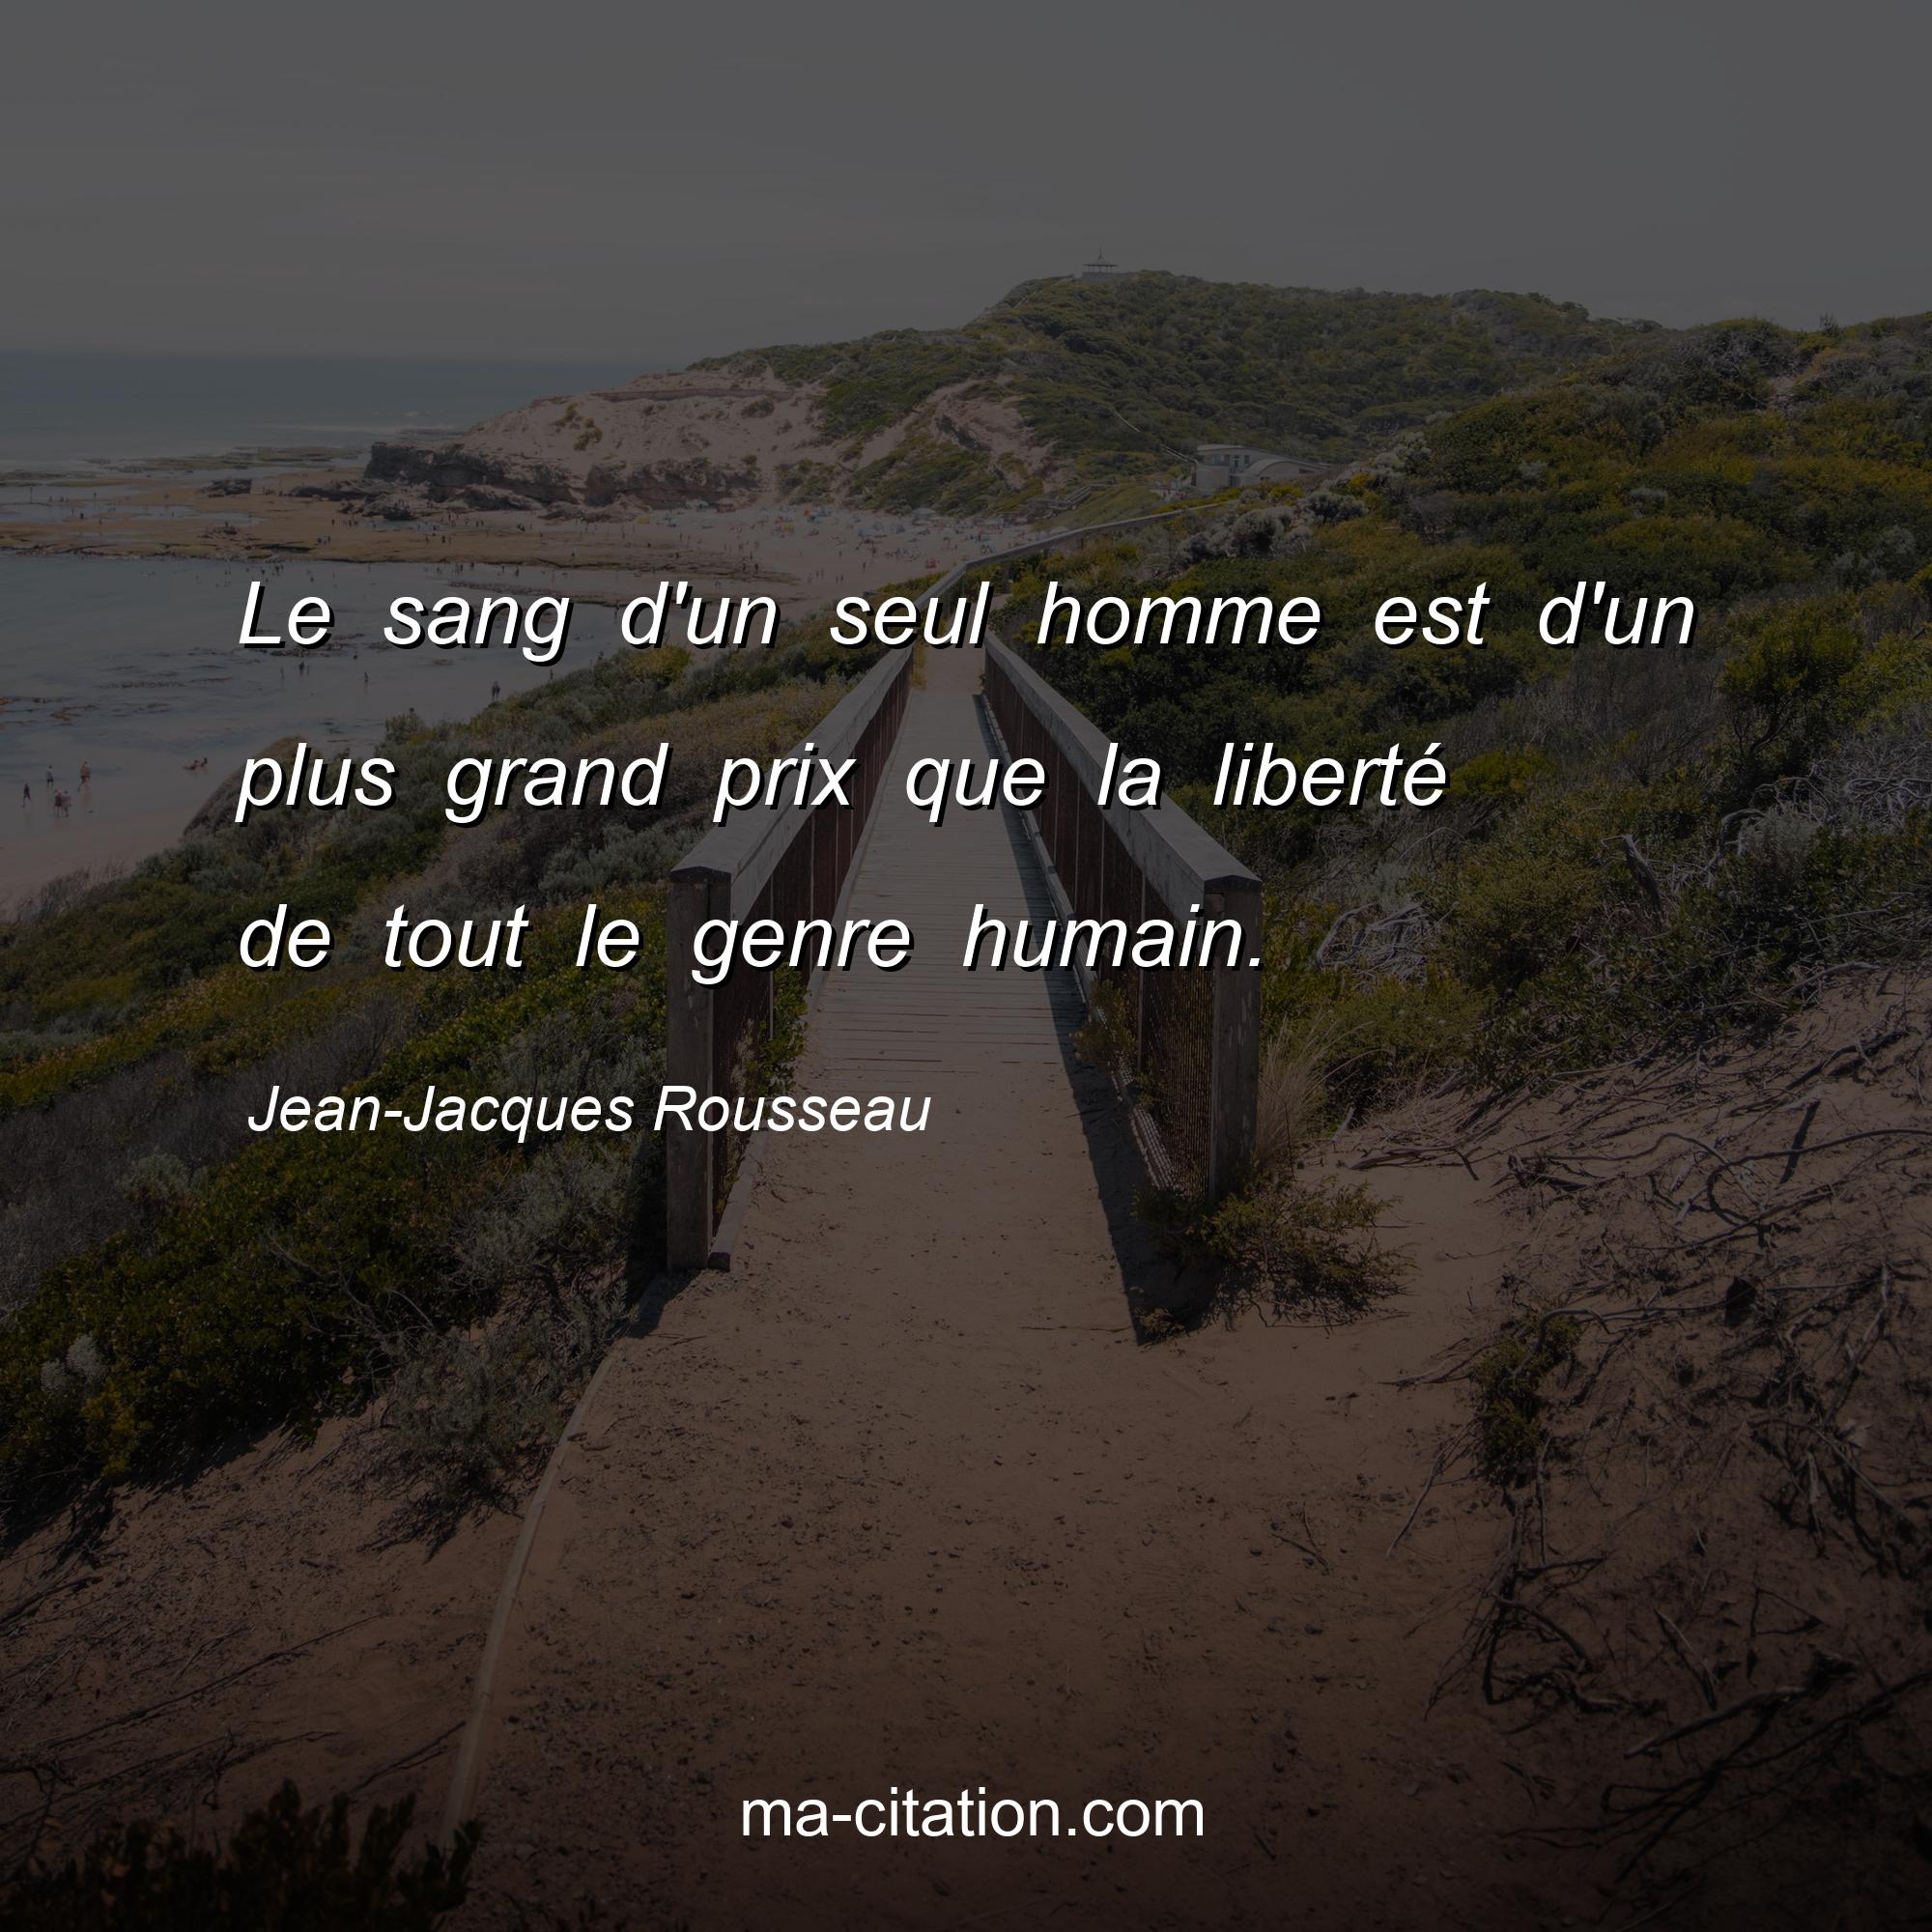 Jean-Jacques Rousseau : Le sang d'un seul homme est d'un plus grand prix que la liberté de tout le genre humain.